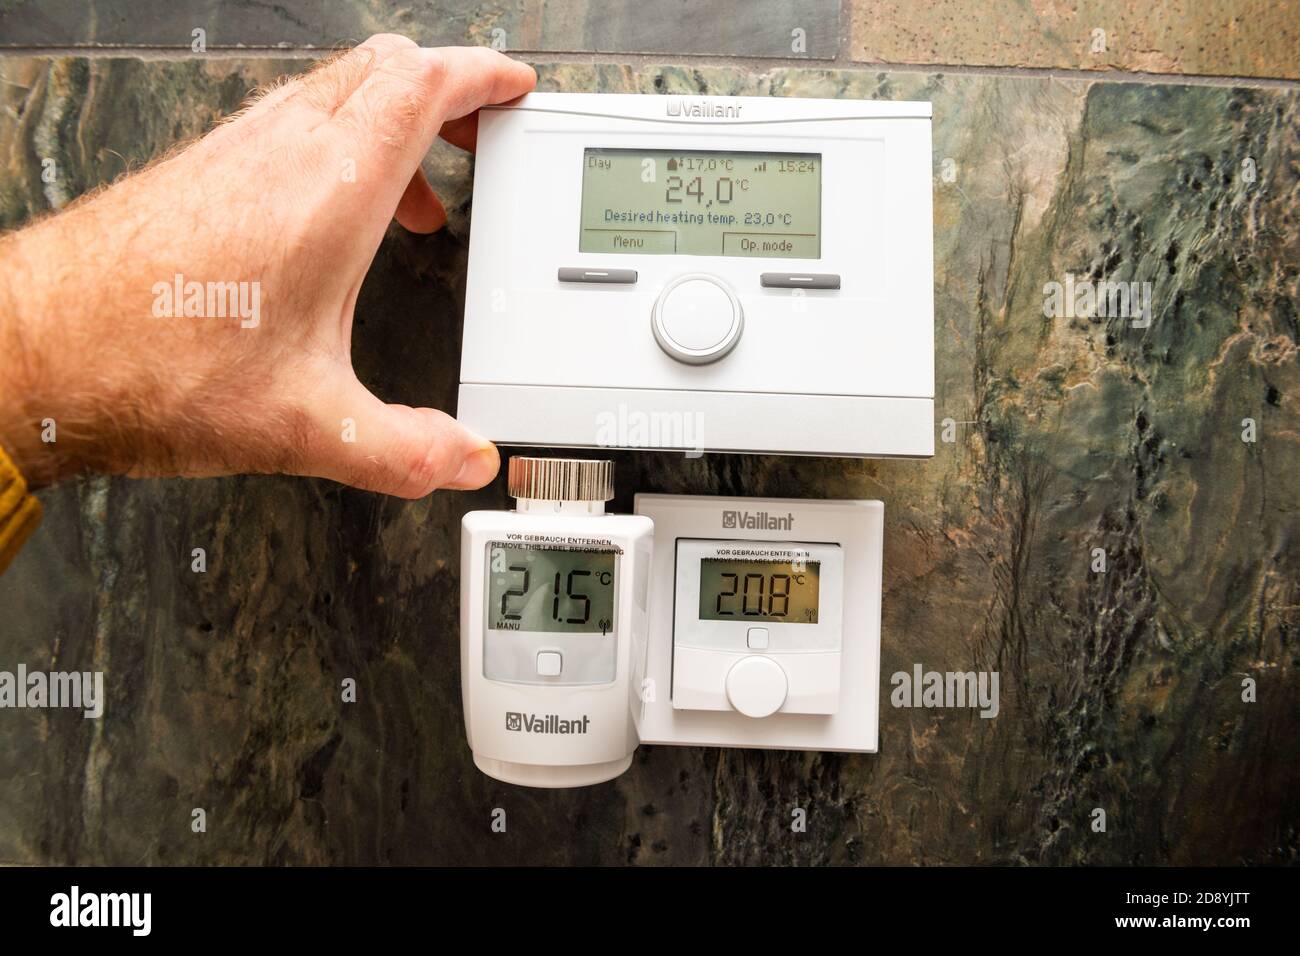 Paris, Francia - Oct 25, 2020: POV man mostrando dispositivos Vaillant IoT  - VRC 700f termostatos de compensación meteorológica, válvula termostática  VR50 y termostato de sala Ambisense VR51 Fotografía de stock - Alamy